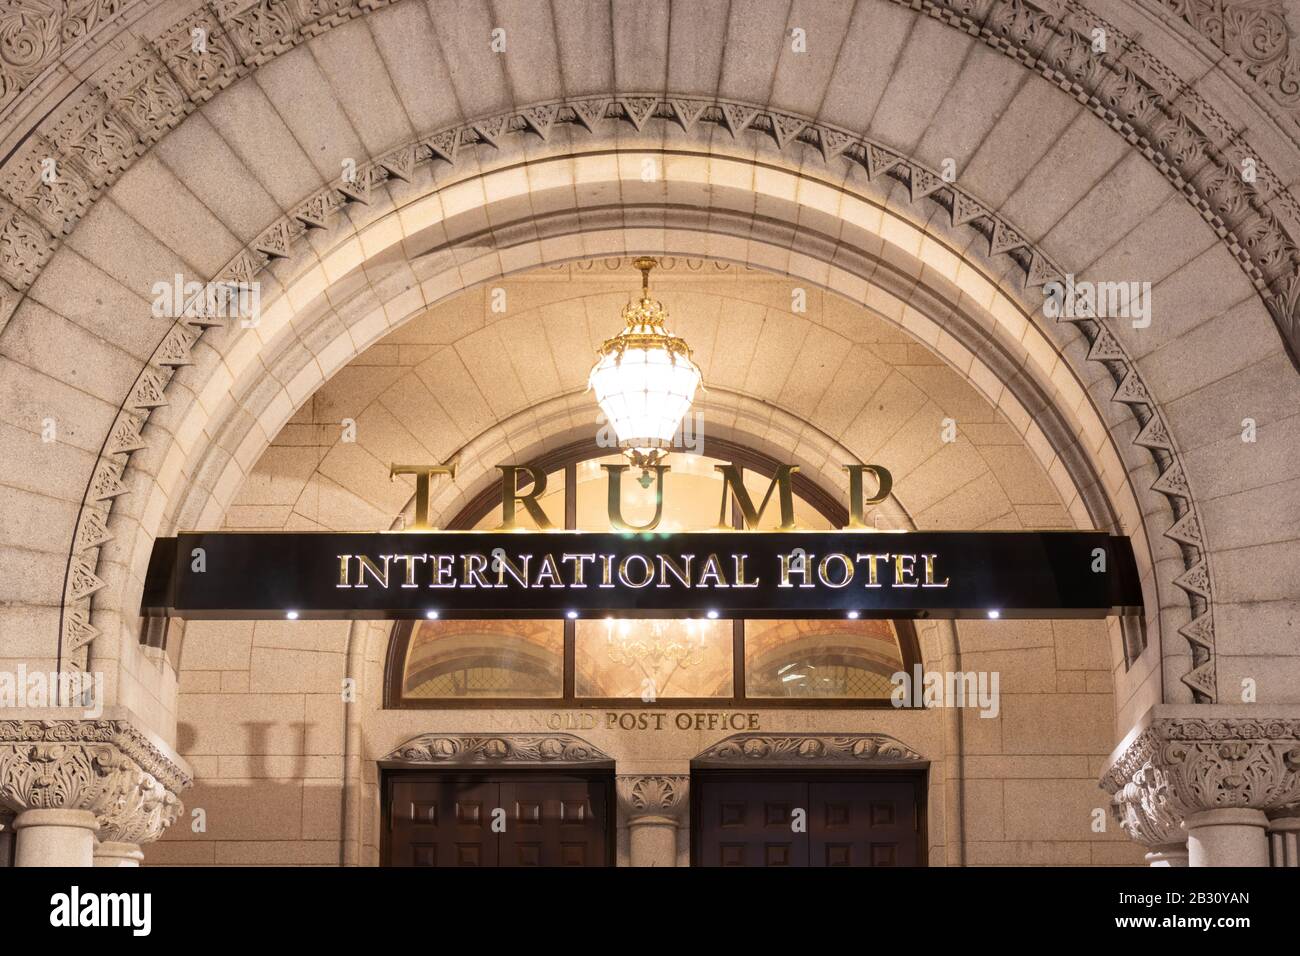 El Trump International Hotel tiene un cartel en la entrada del hotel de lujo, una vez fue la antigua oficina de correos en Pennsylvania Avenue en Washington, D.C. Foto de stock